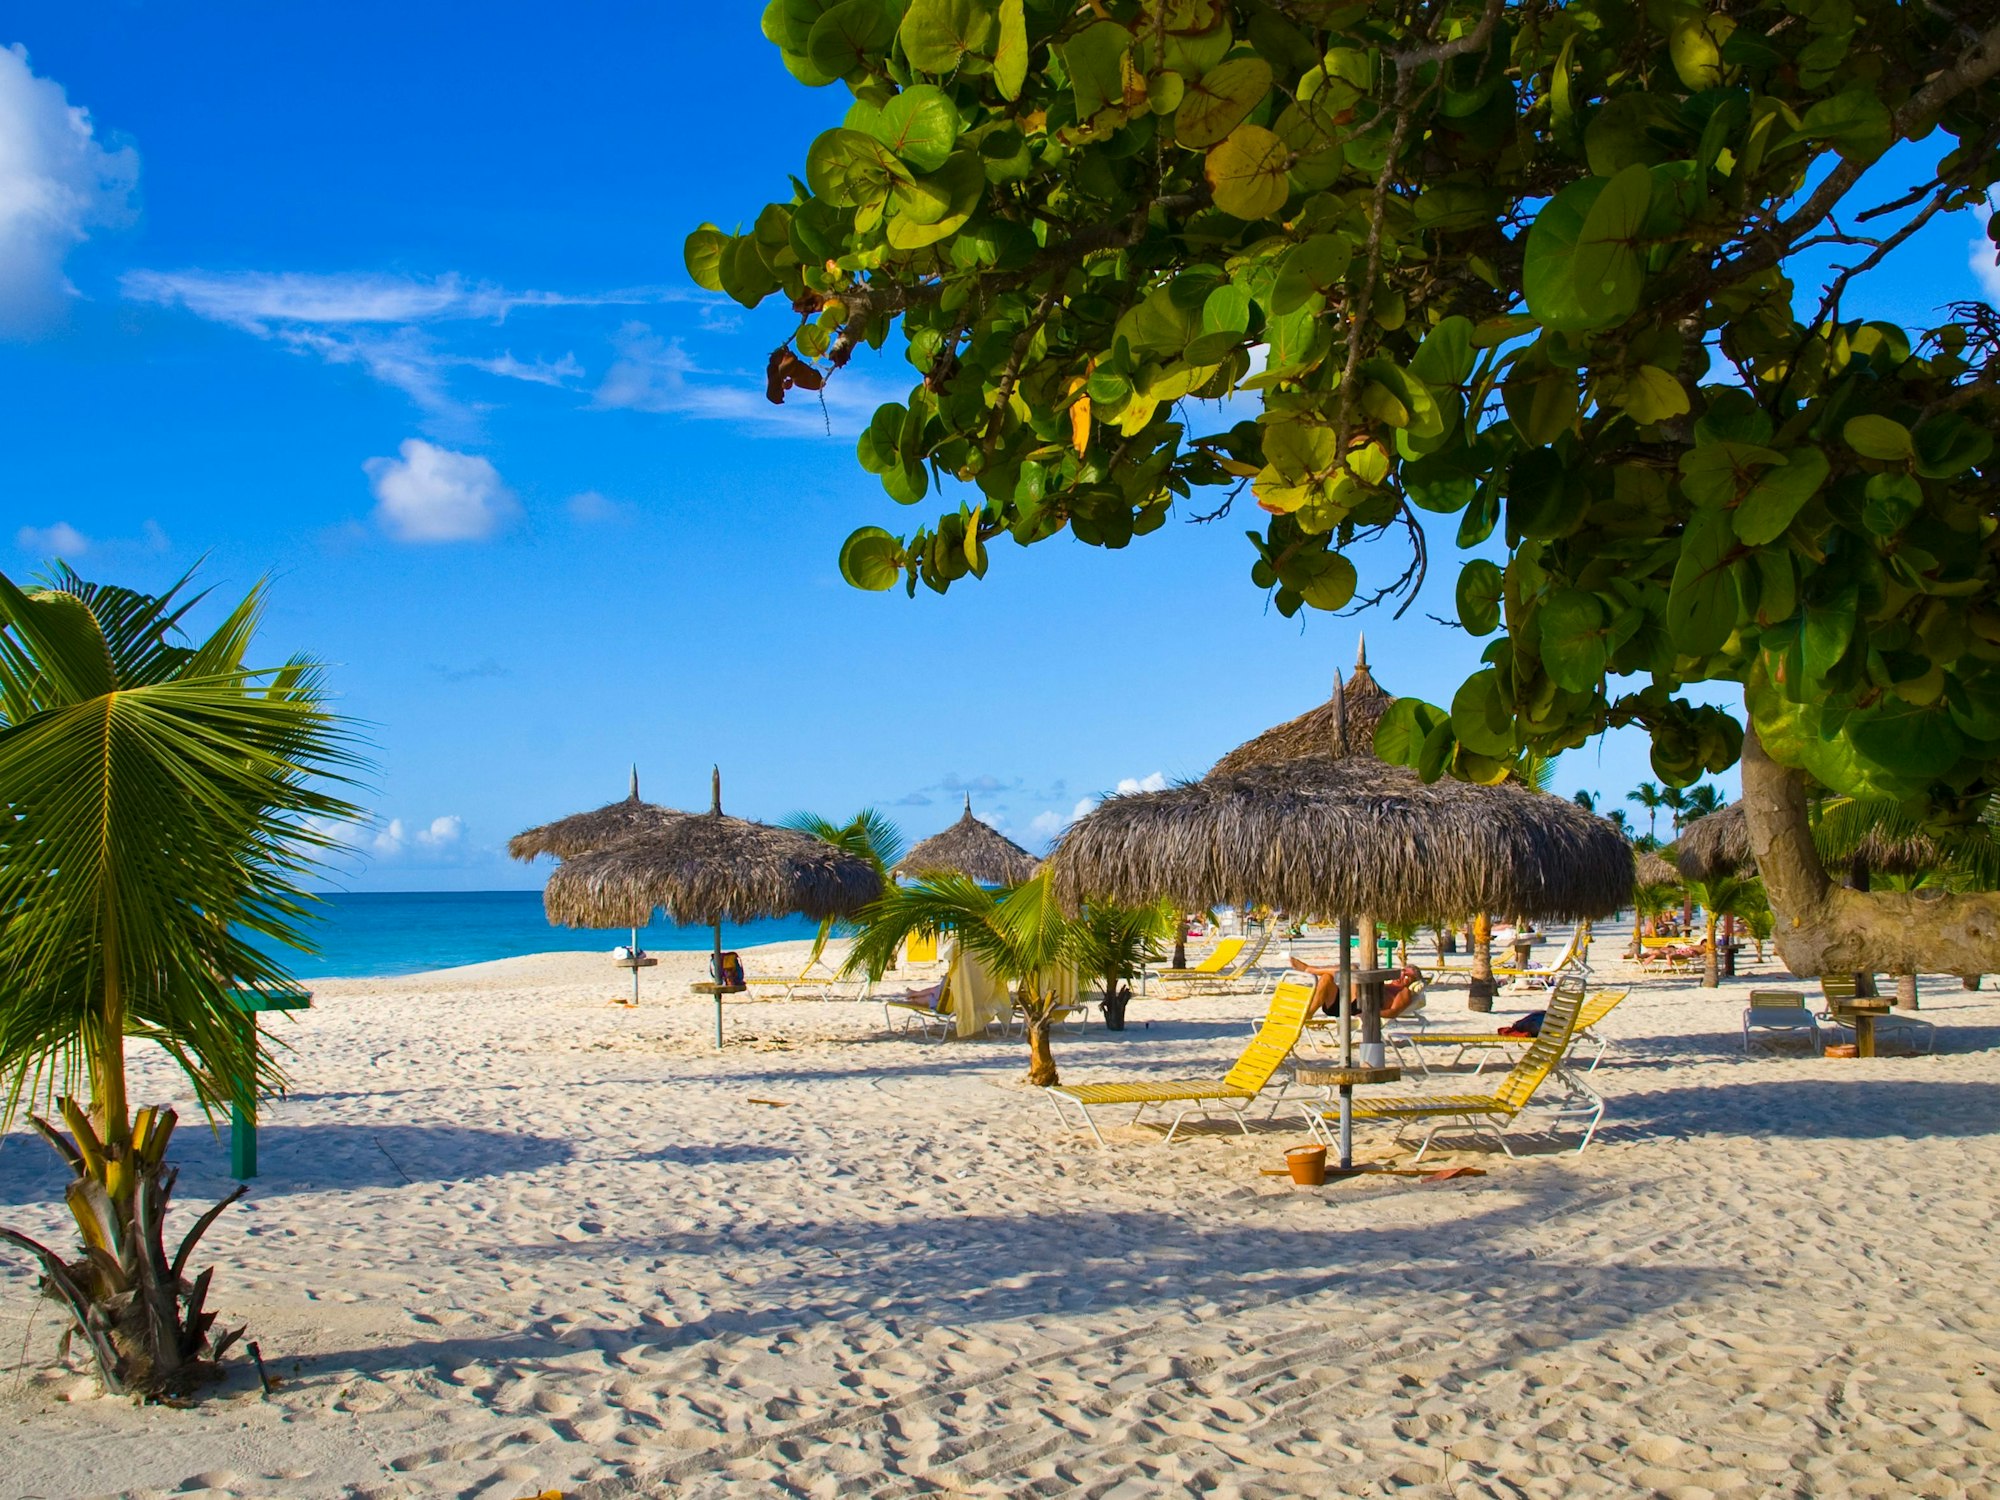 Palmen, Sonnenschirme und Liegen am Eagle Beach auf Aruba, Aufnahme undatiert.